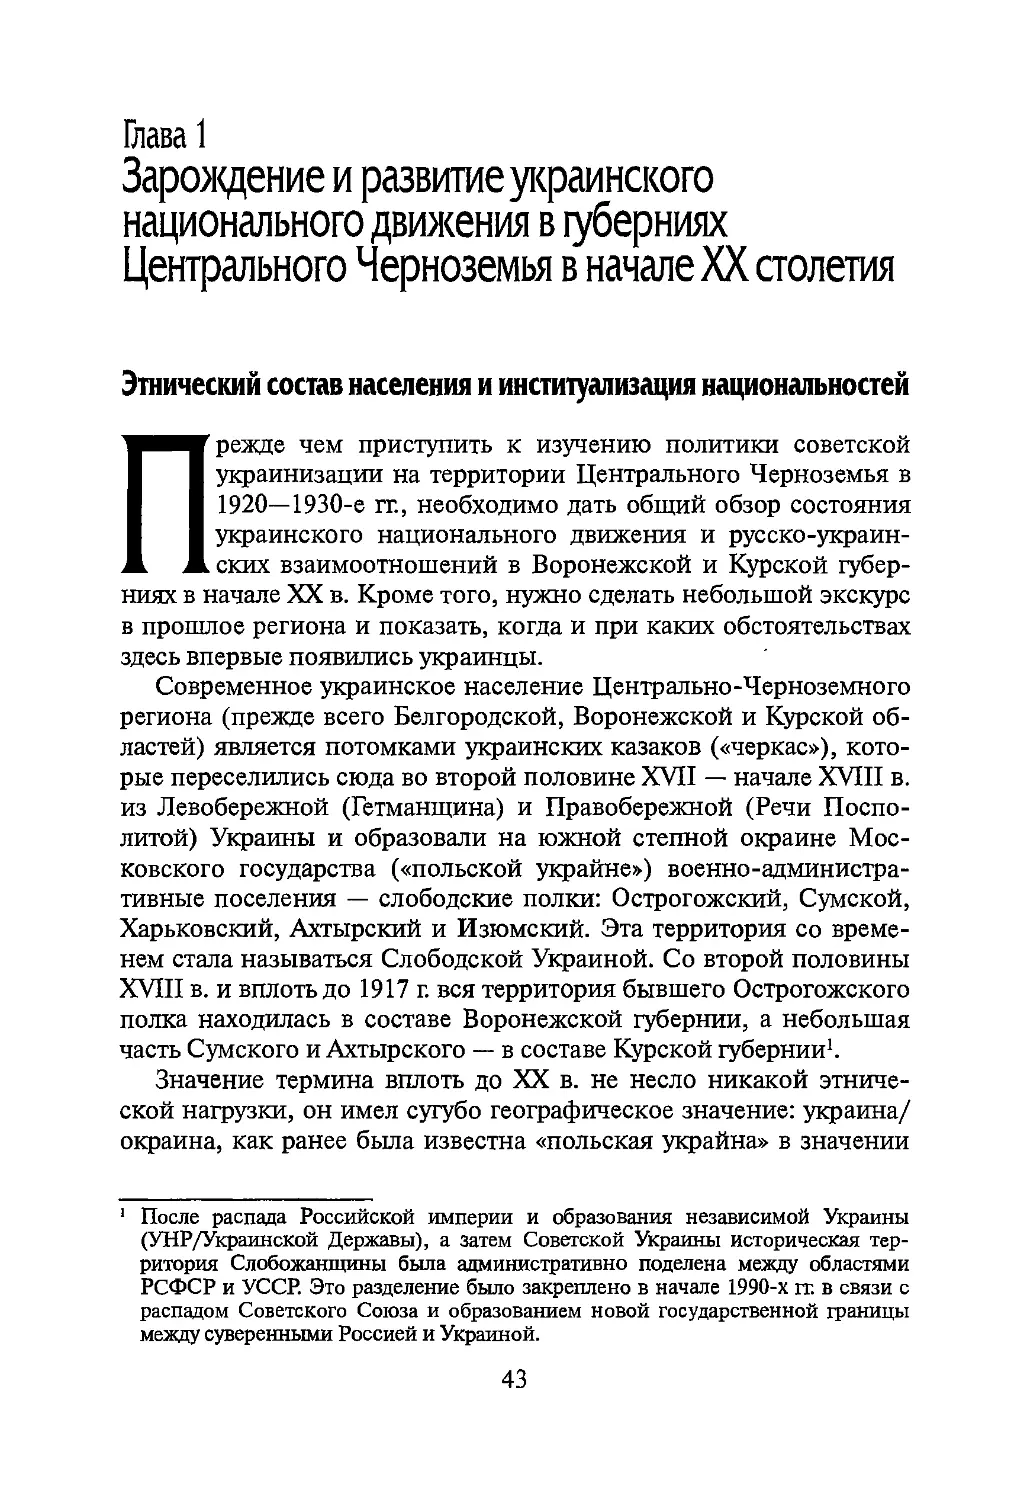 Глава 1. Зарождение и развитие украинского национального движения в губерниях Центрального Черноземья в начале XX столетия